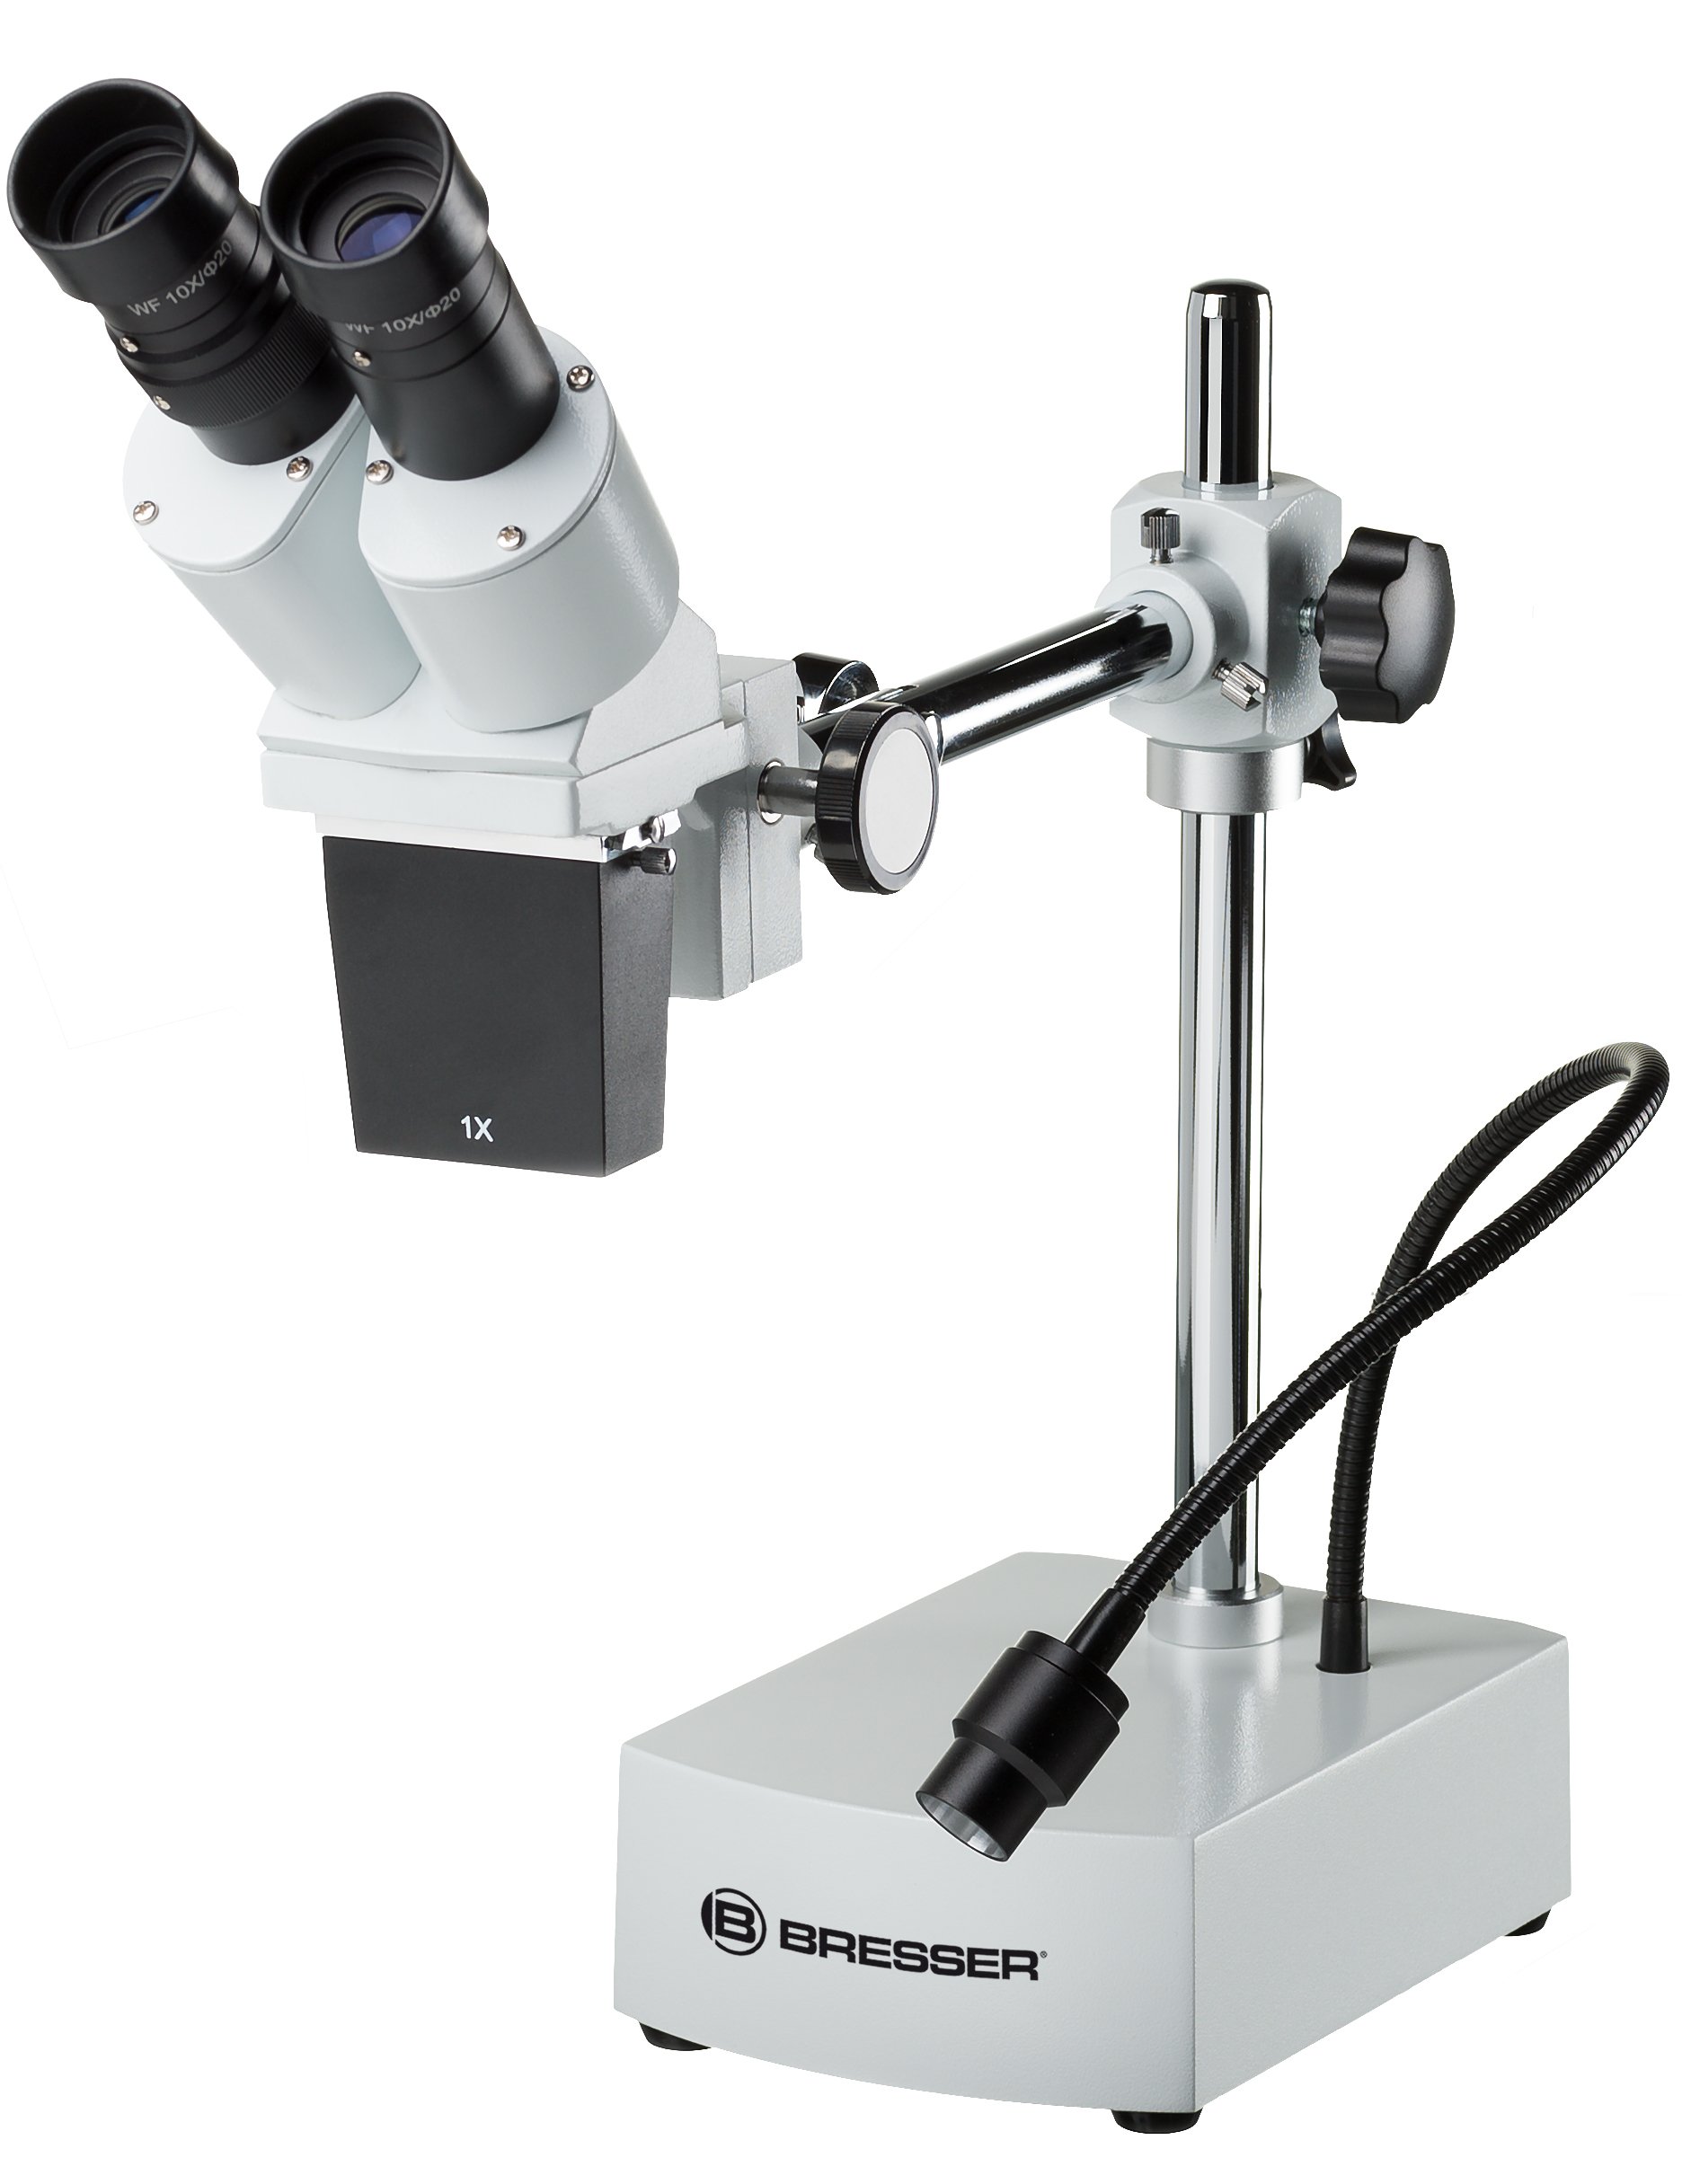 Bresser Auflicht Stereo Mikroskop Biorit ICD-CS 10x/20x Vergrößerung, mit sehr großem Arbeitsabstand und flexibler LED-Beleuchtung, optimal für Lötarbeiten